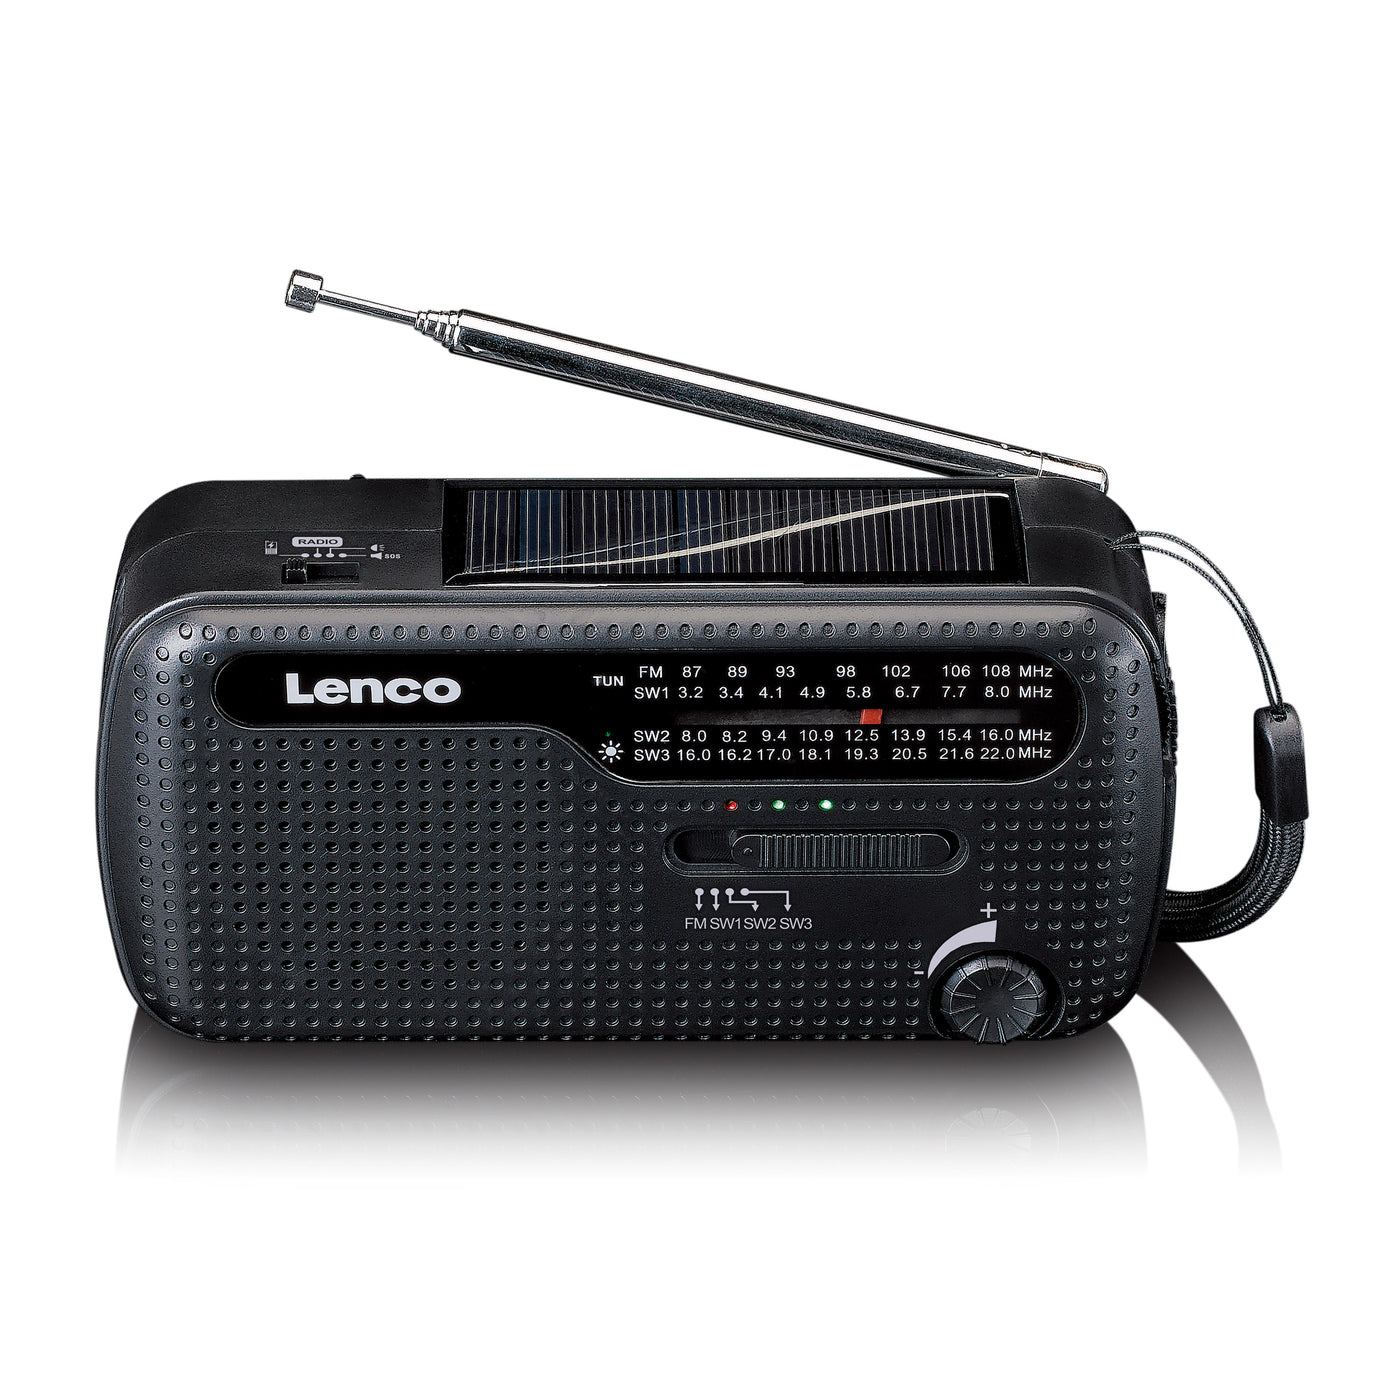 Lenco MCR-112BK - Tragbares Notfall Kurbelradio mit Aufziehfunktion, Taschenlampe und Powerbank in einem - Schwarz